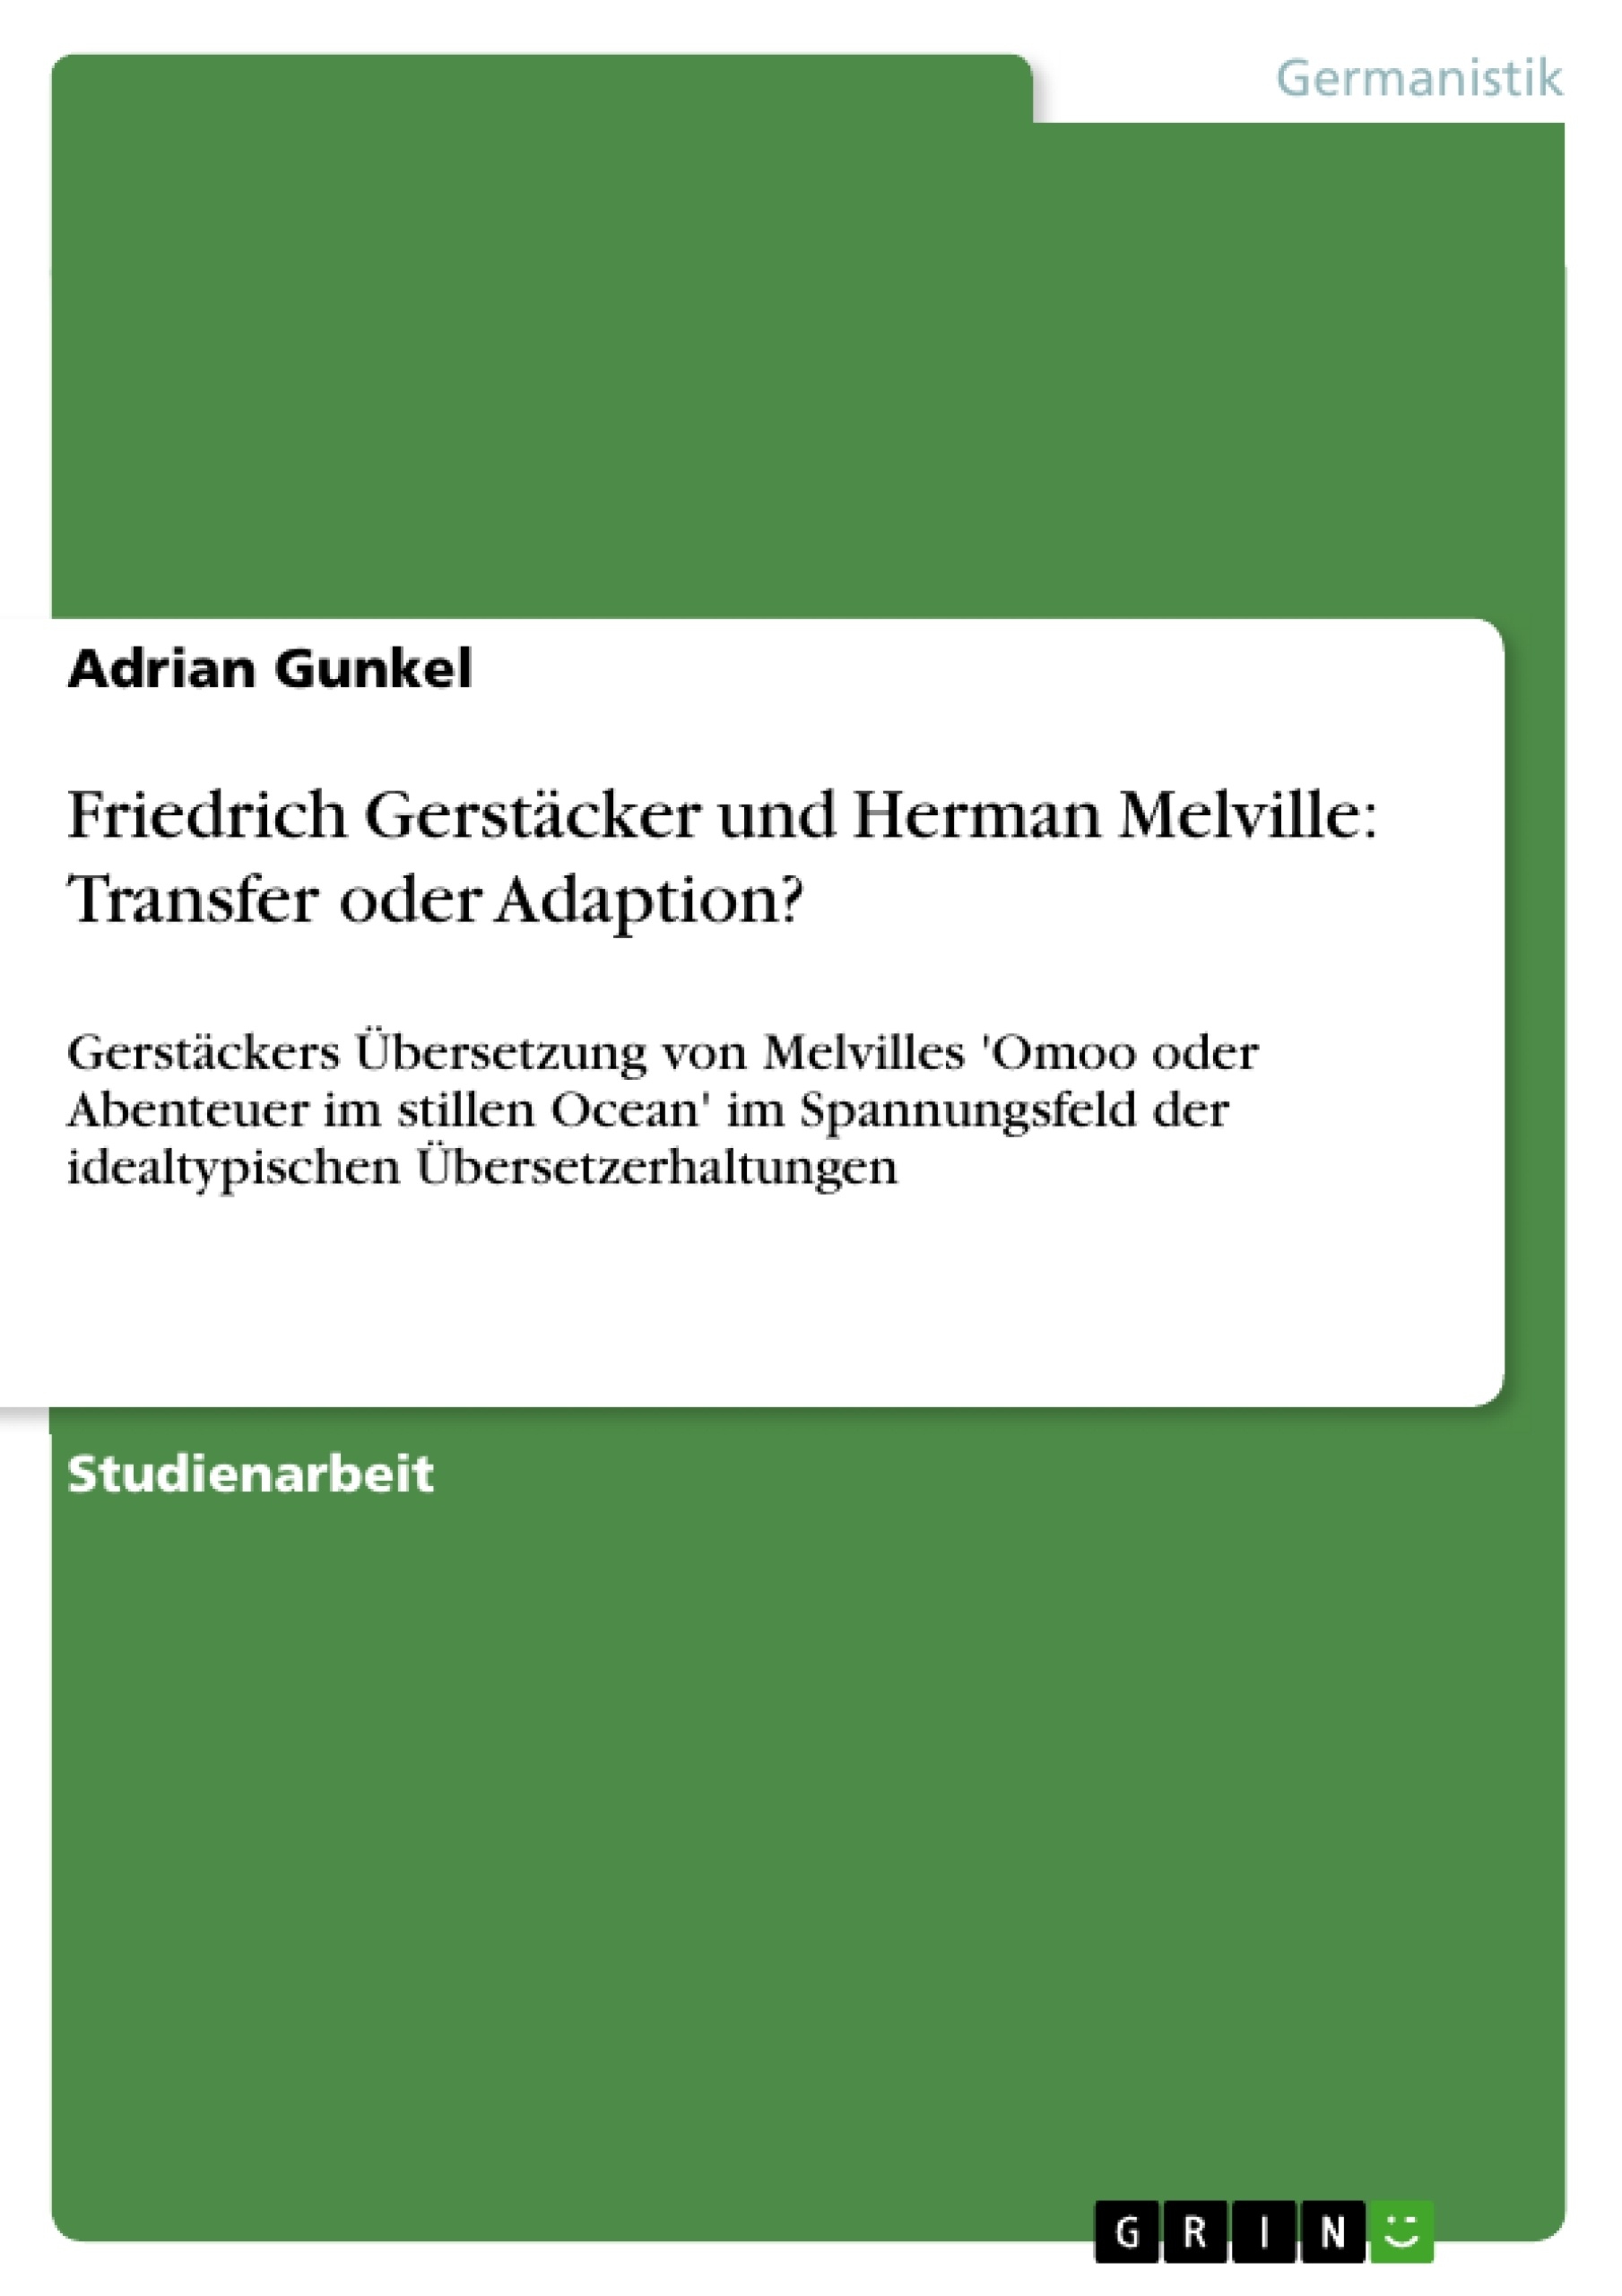 Title: Friedrich Gerstäcker und Herman Melville: Transfer oder Adaption?